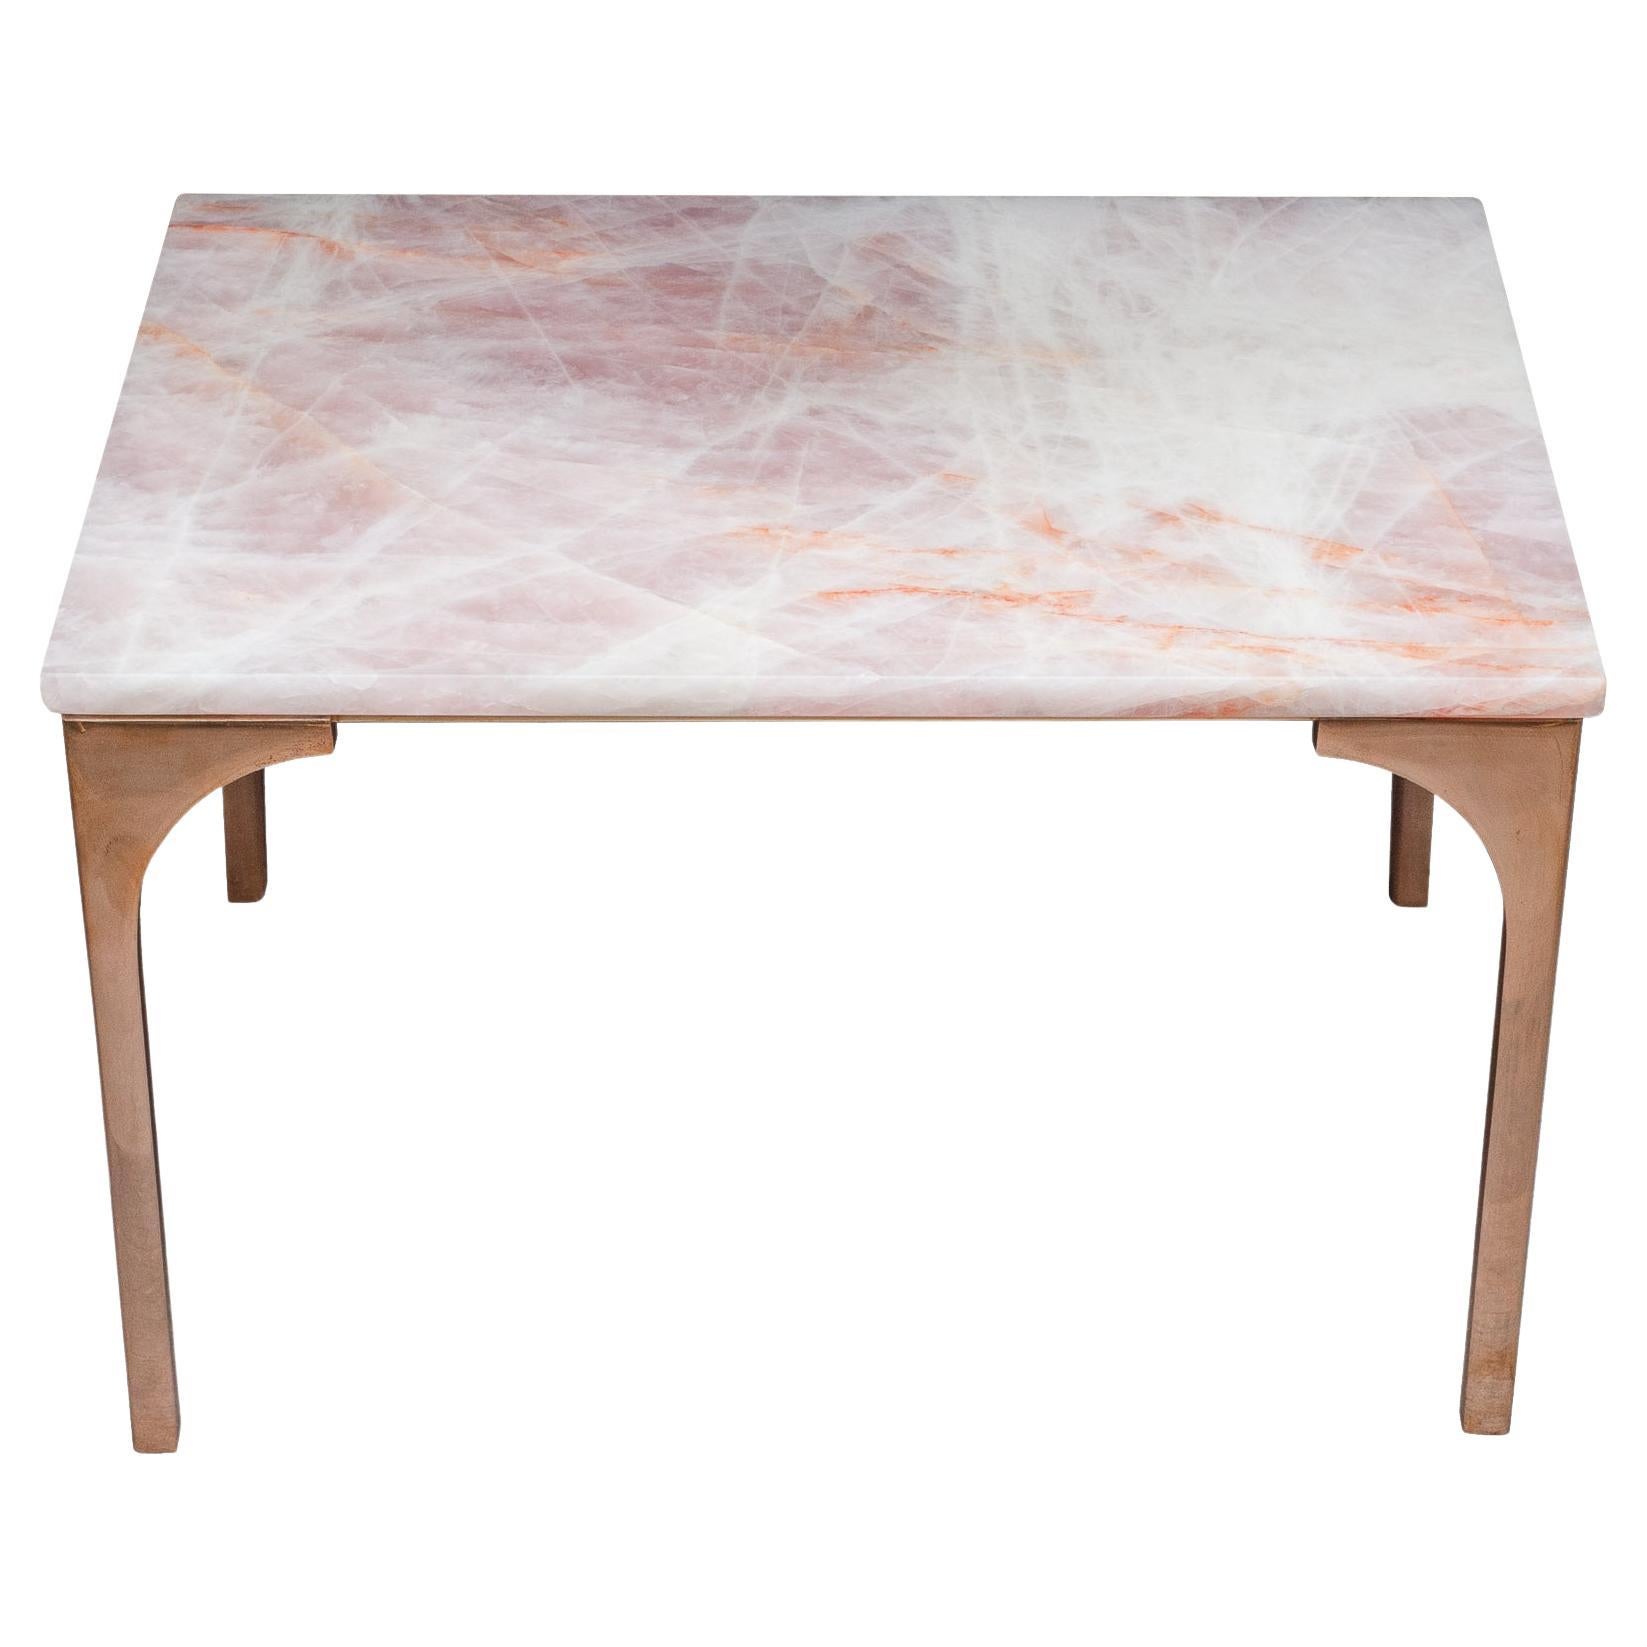 Studio Maison Nurita table en quartz rose avec pieds en bronze coulé poli